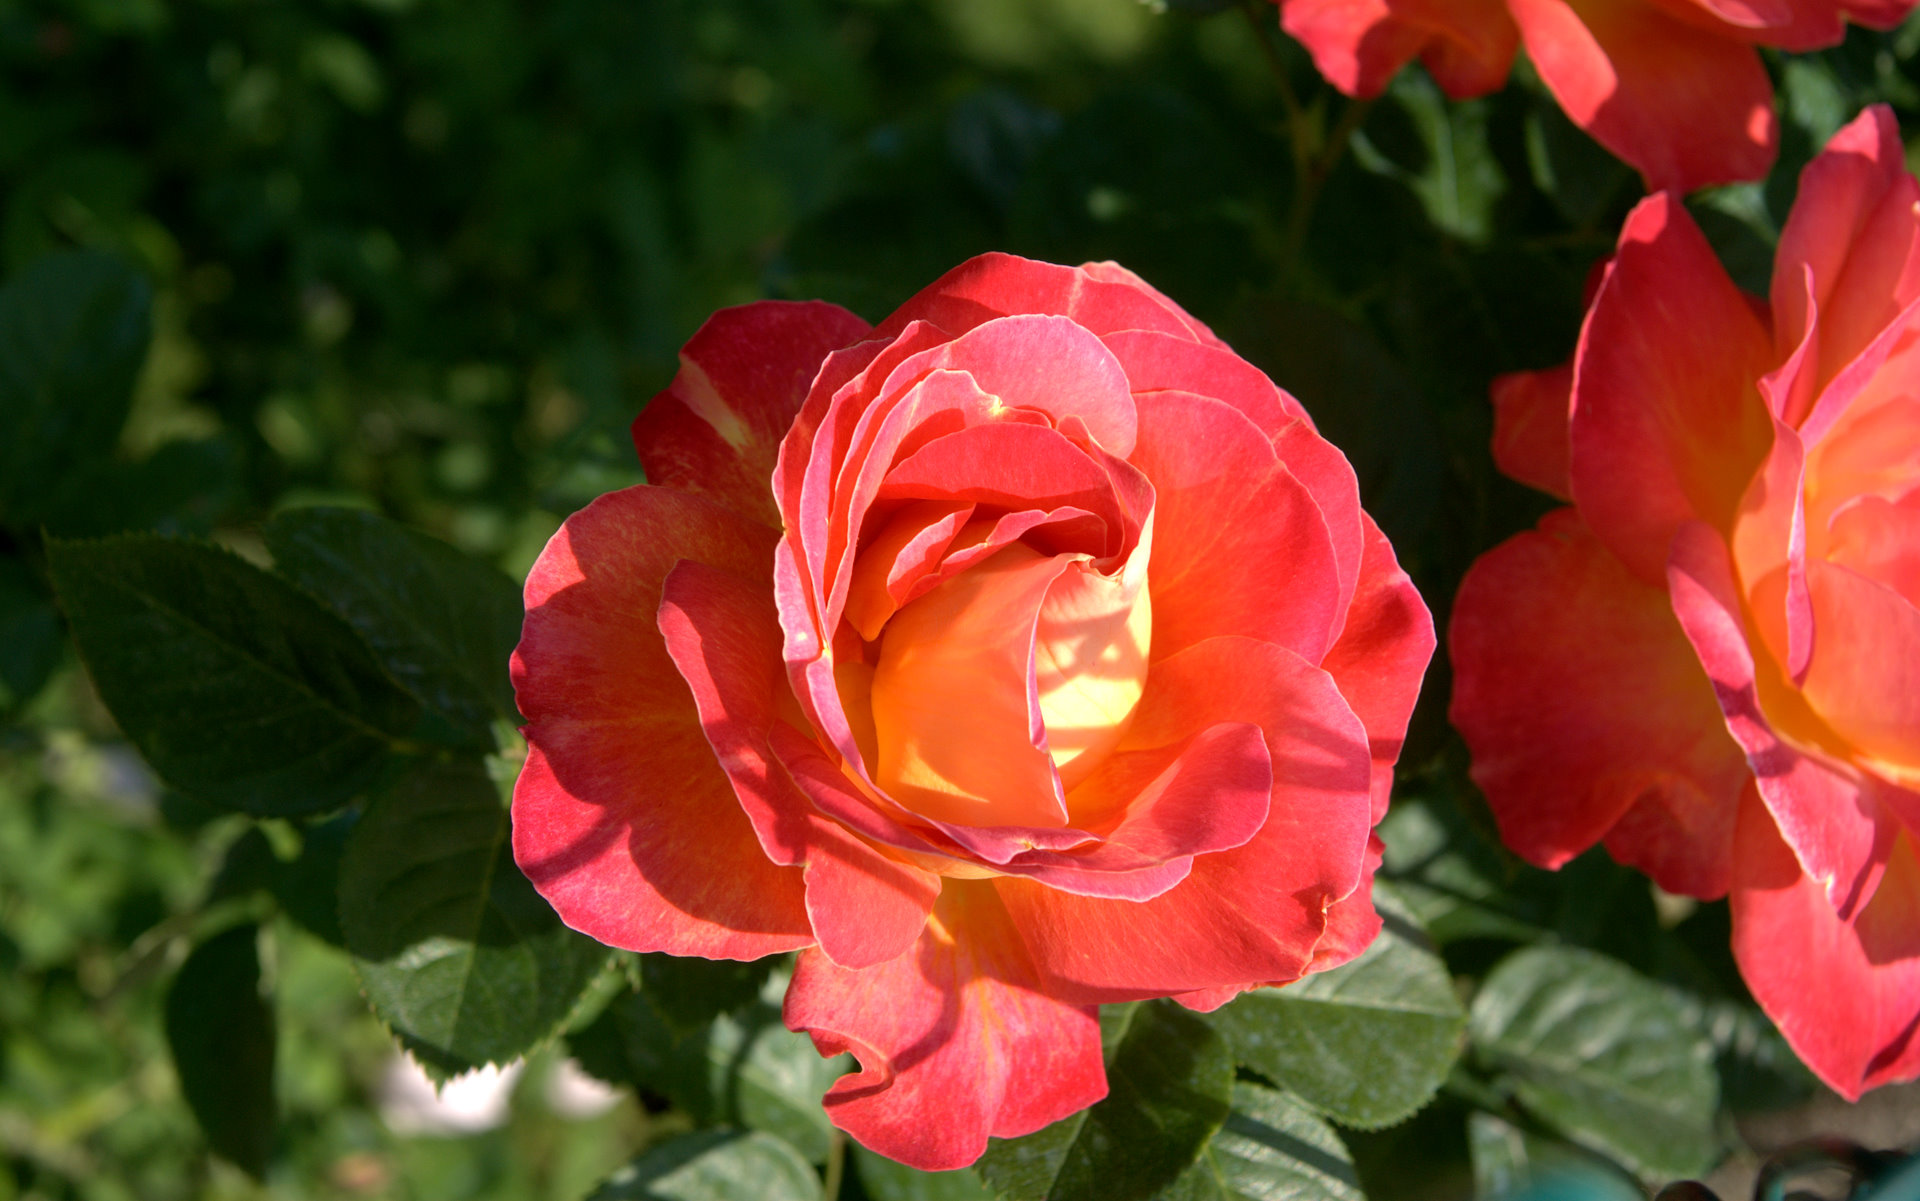 Amazing crimson rose